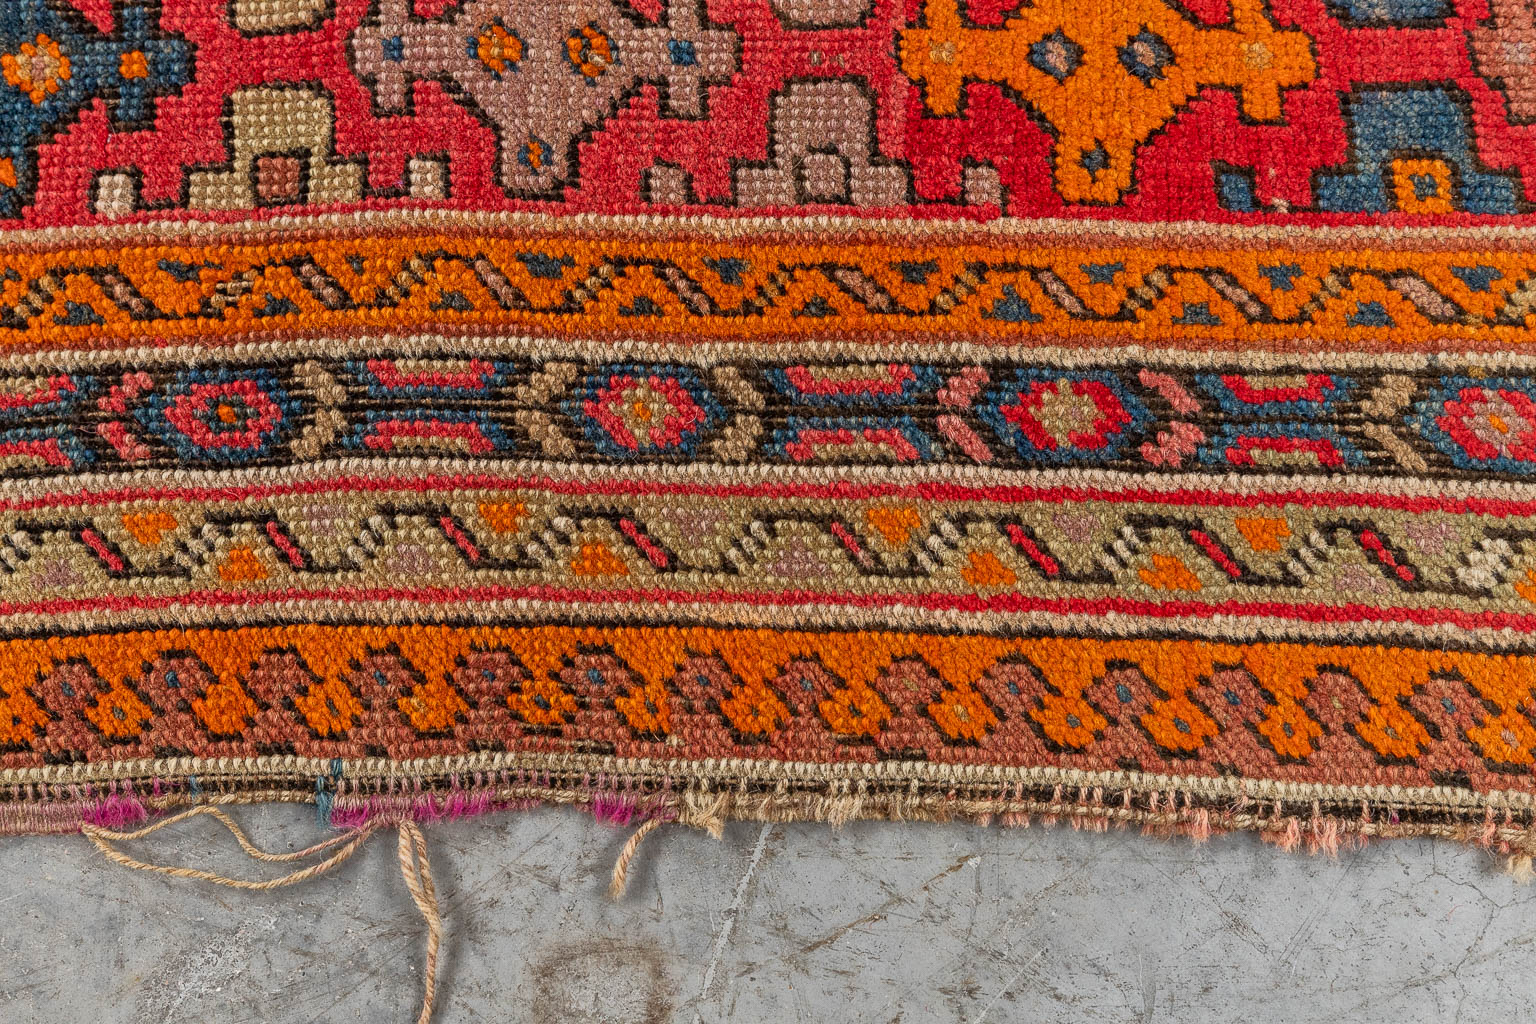 An Oriental hand-made carpet, Karabach (D:290 x W:128 cm)